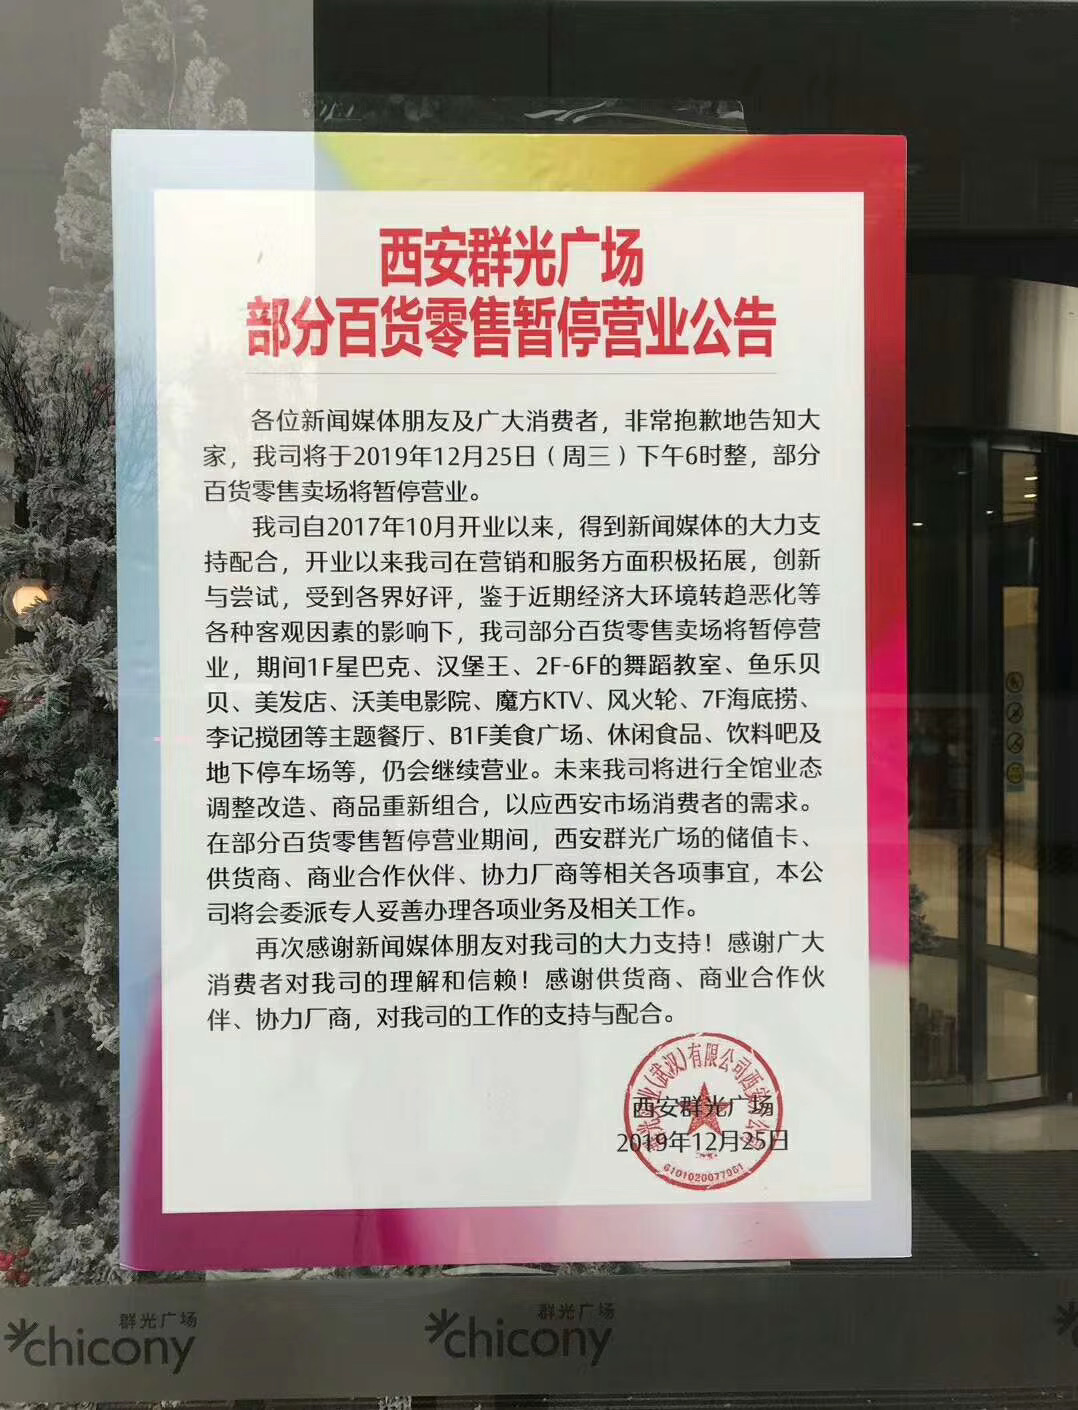 商业地产一周要闻:万科年底人事大换防、上海三林印象城将再次易主